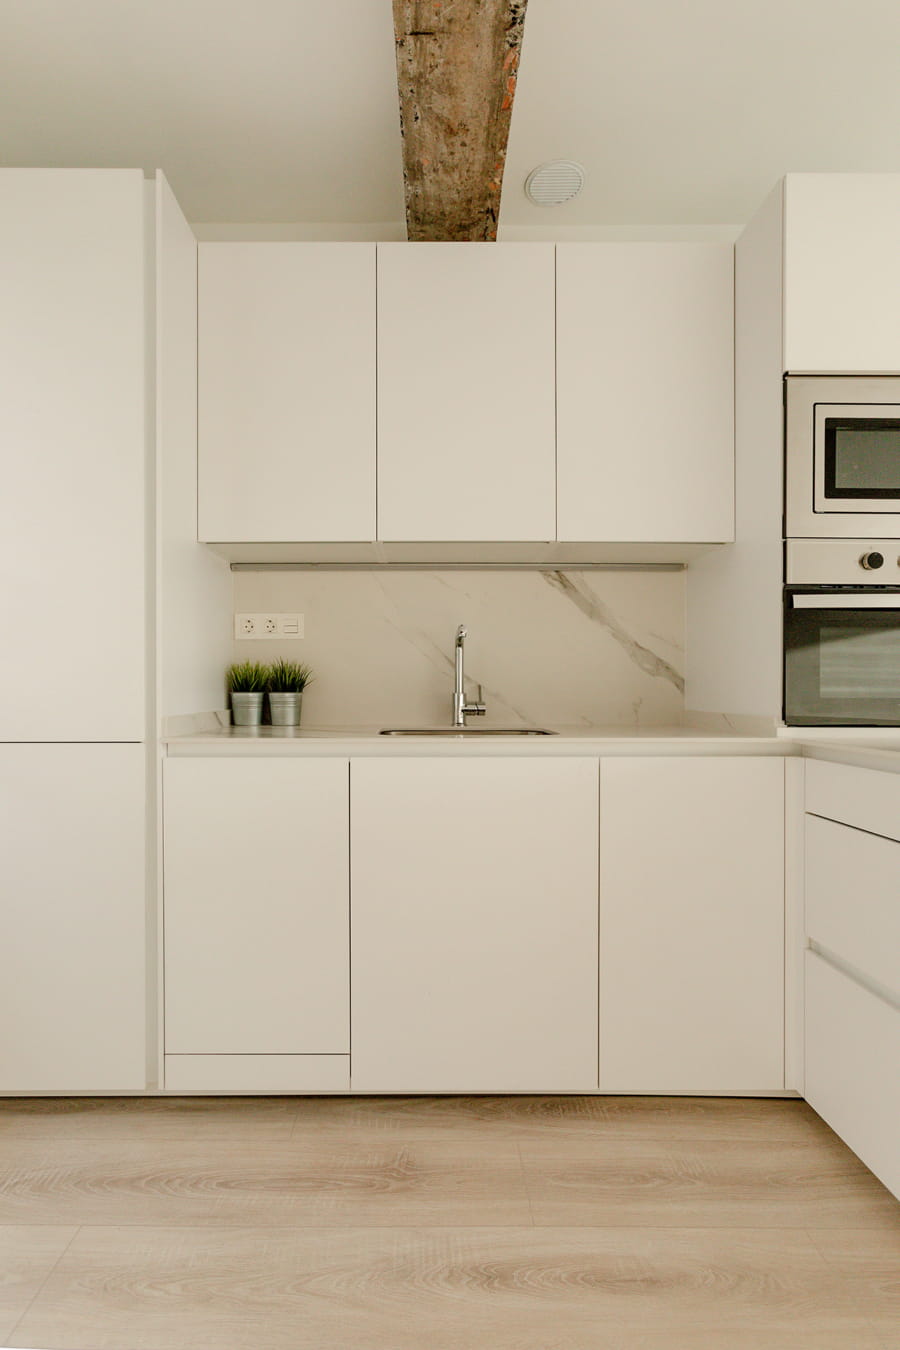 Appartement met witte Santos keuken in L-opstelling